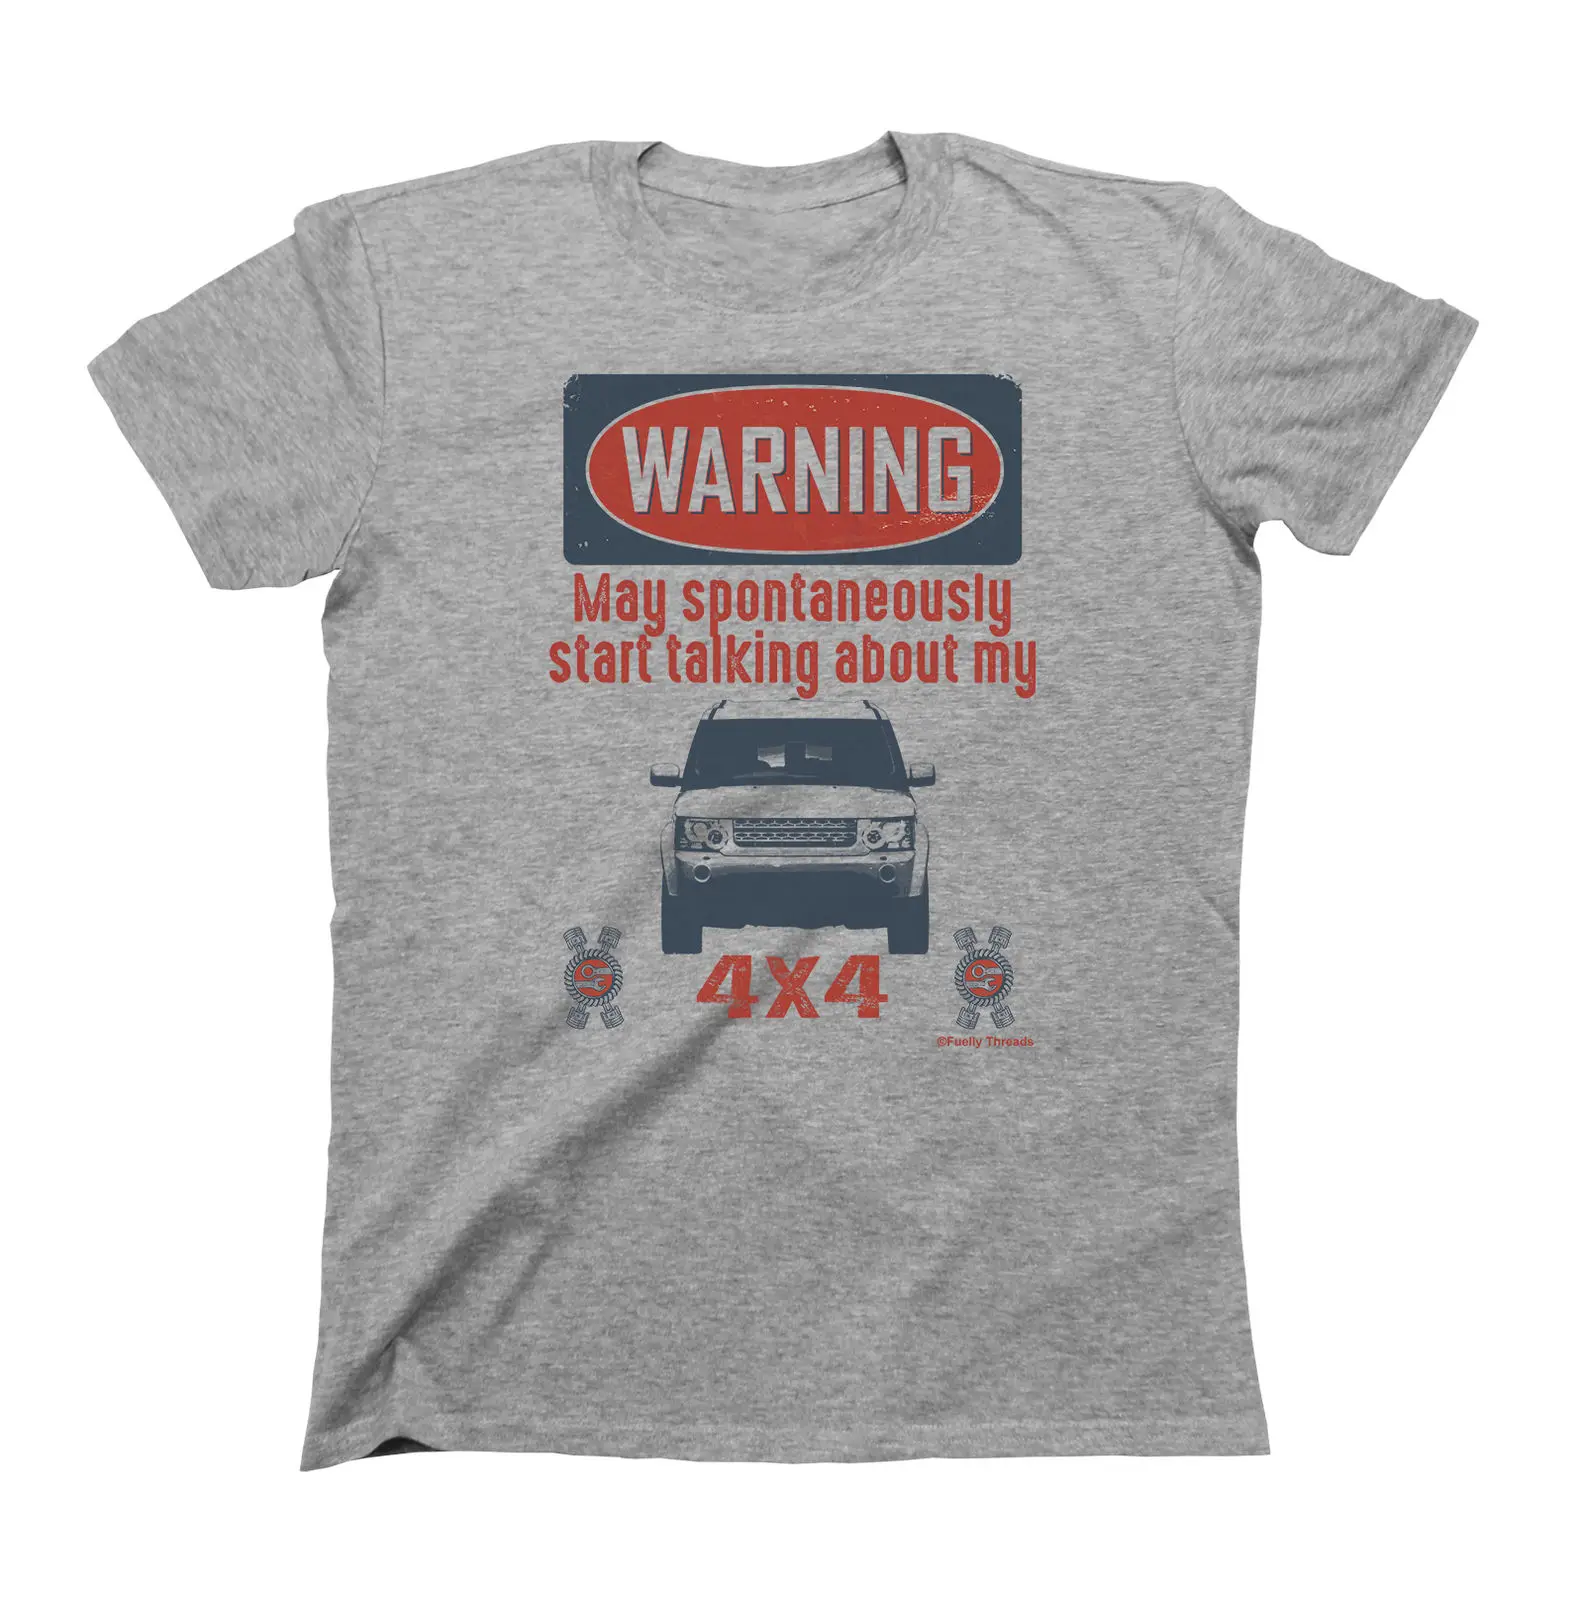 2019 moda erkek araba T-Shirt uyarı olabilir kendiliğinden hakkında konuşmak 4x4 İngiliz araba hayranları Discovery Tee gömlek